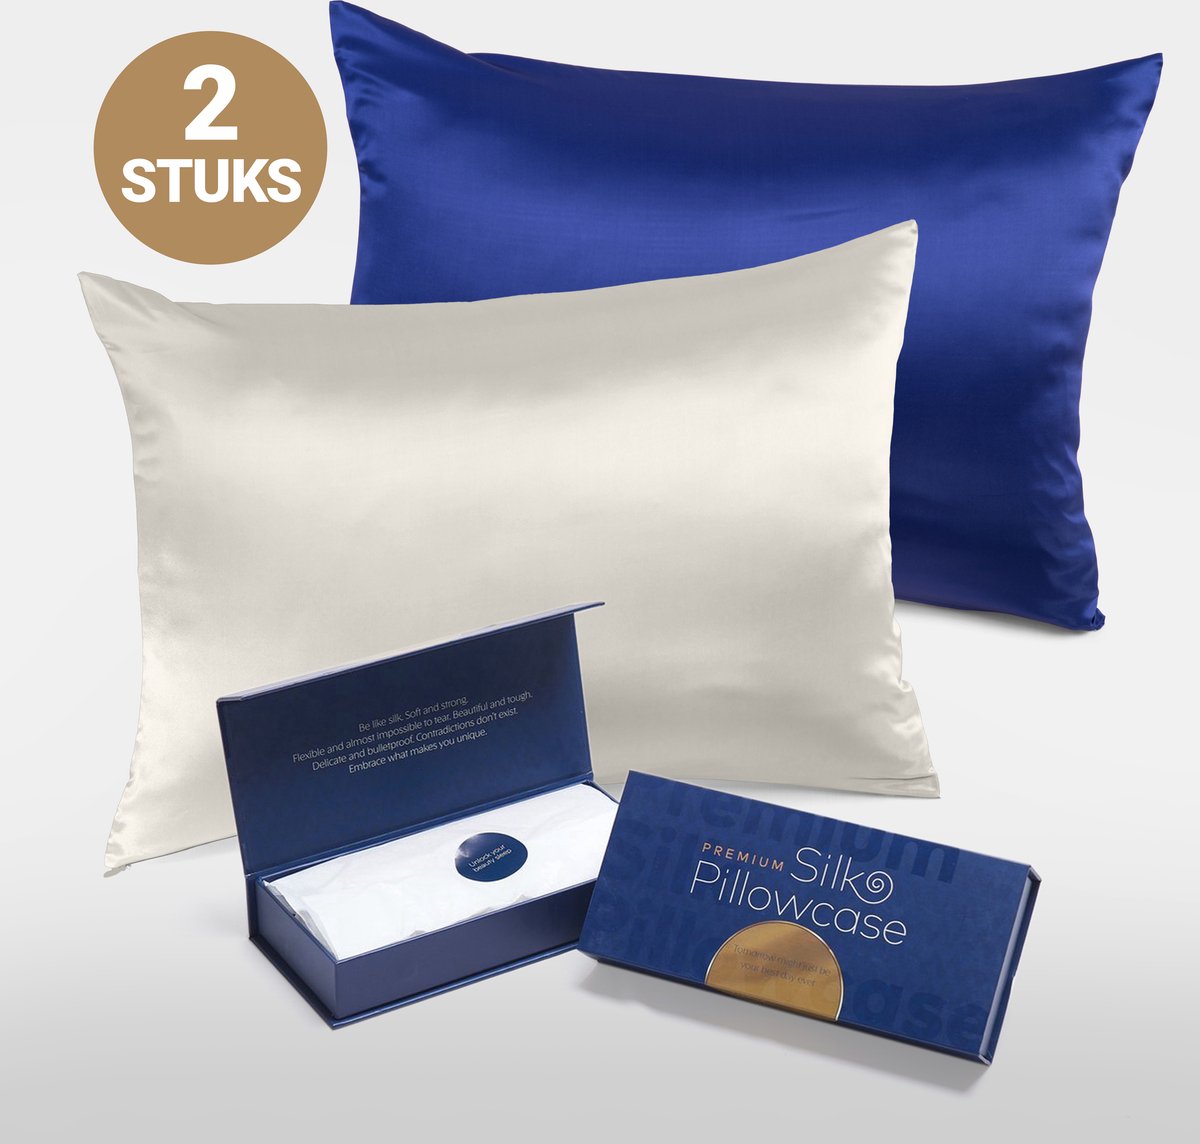 Slowwave Premium Silk Pillowcase - Extra voordelig colorpack: Off White (gebroken wit) en Cloud Burst (blauw) - Ervaar het beste zijden kussensloop - 100% Mulberry zijde - 22 momme - Hoogste kwaliteit (grade 6A) - 60x70cm